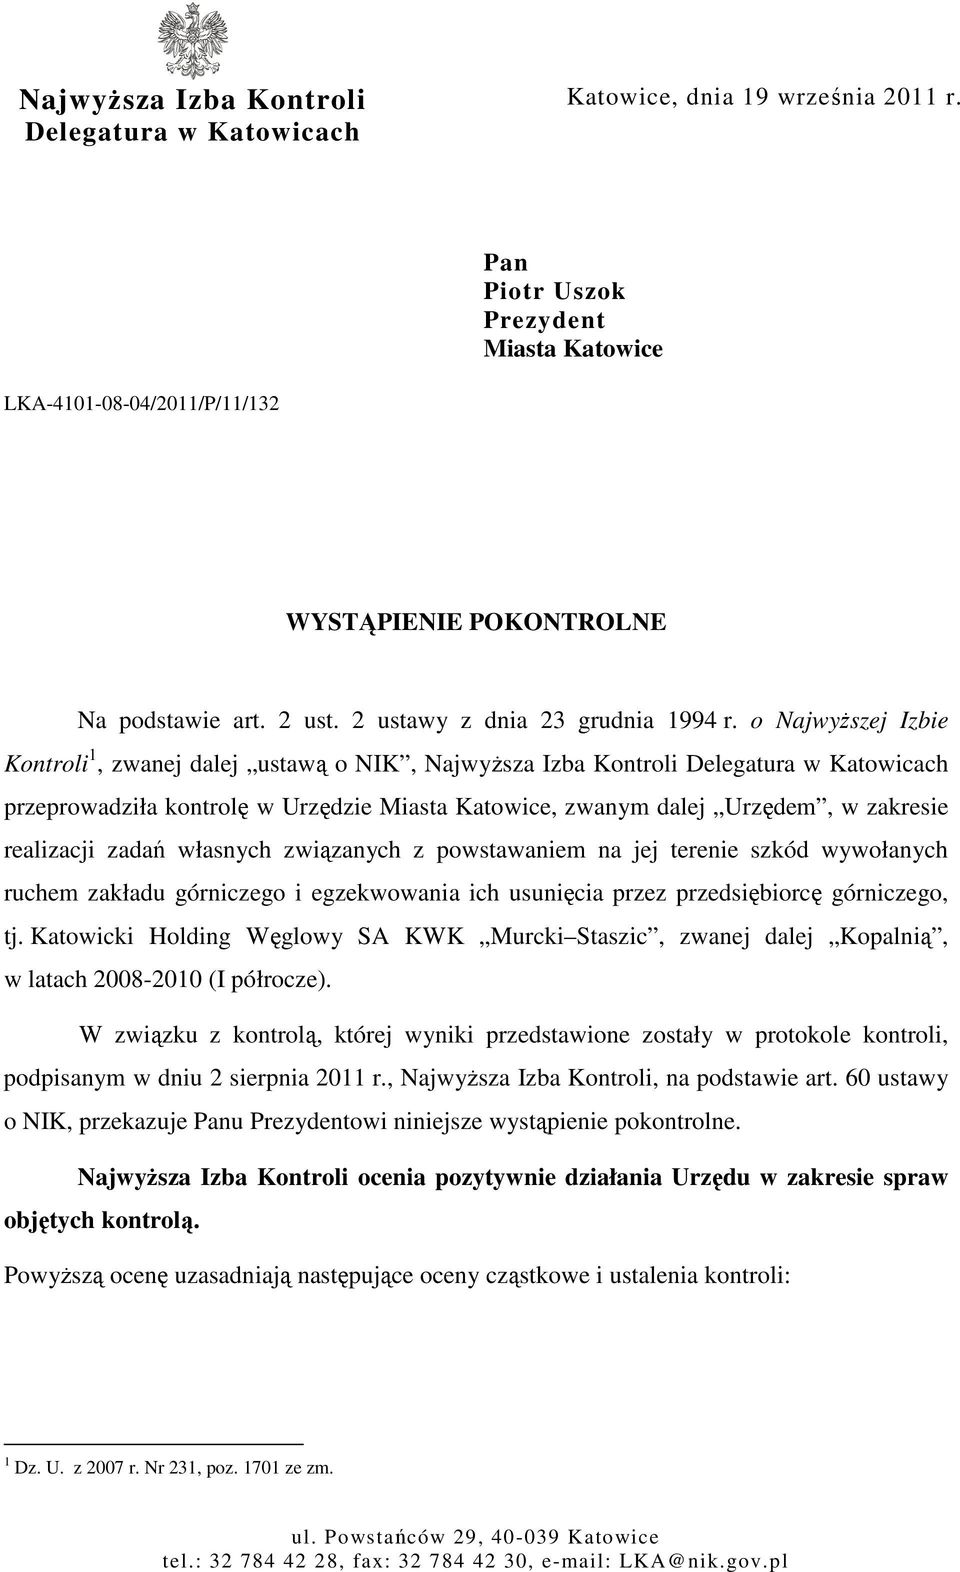 o NajwyŜszej Izbie Kontroli 1, zwanej dalej ustawą o NIK, NajwyŜsza Izba Kontroli Delegatura w Katowicach przeprowadziła kontrolę w Urzędzie Miasta Katowice, zwanym dalej Urzędem, w zakresie